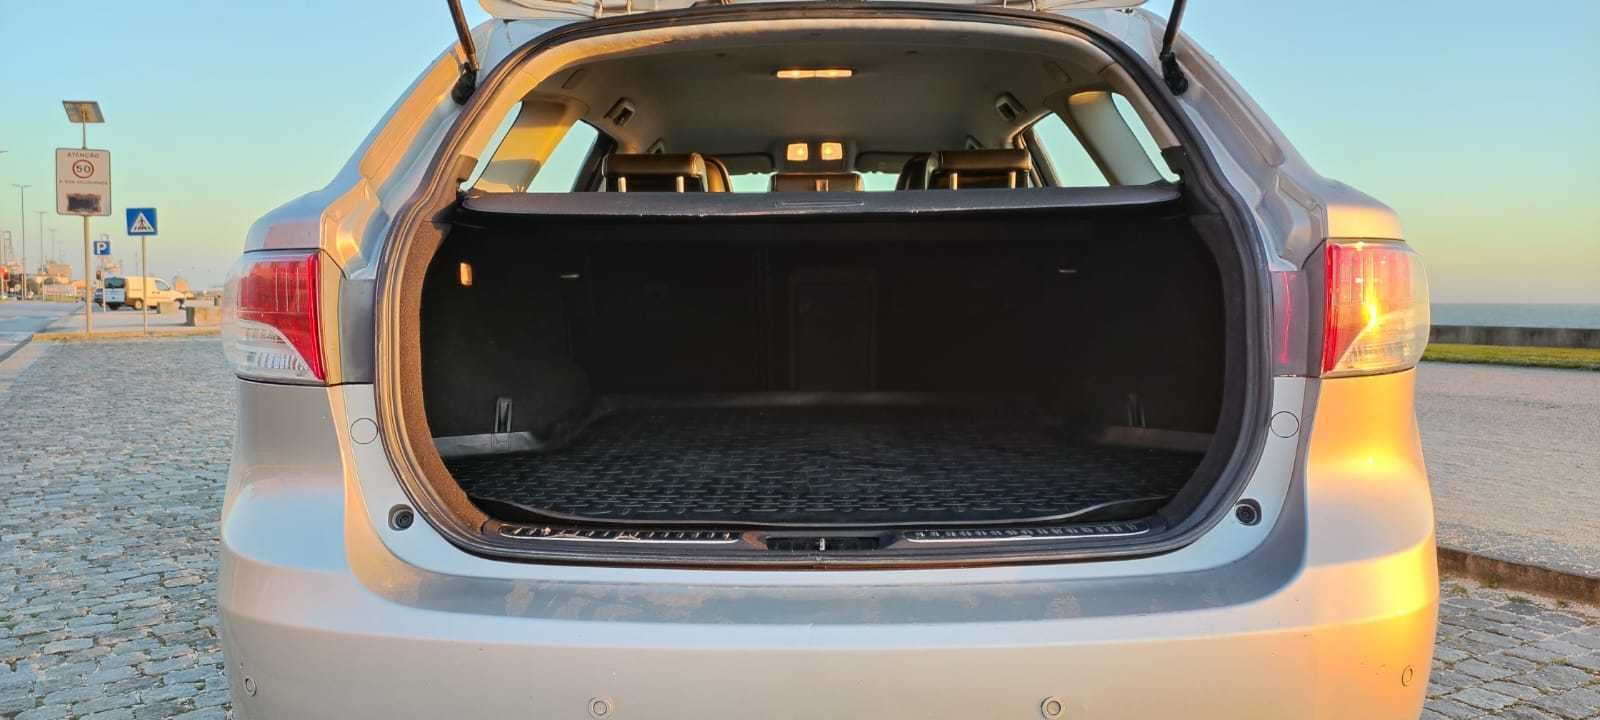 Toyota Avensis 2.0 D4D (126CV) - Exclusive + Estofos em Pele + GPS